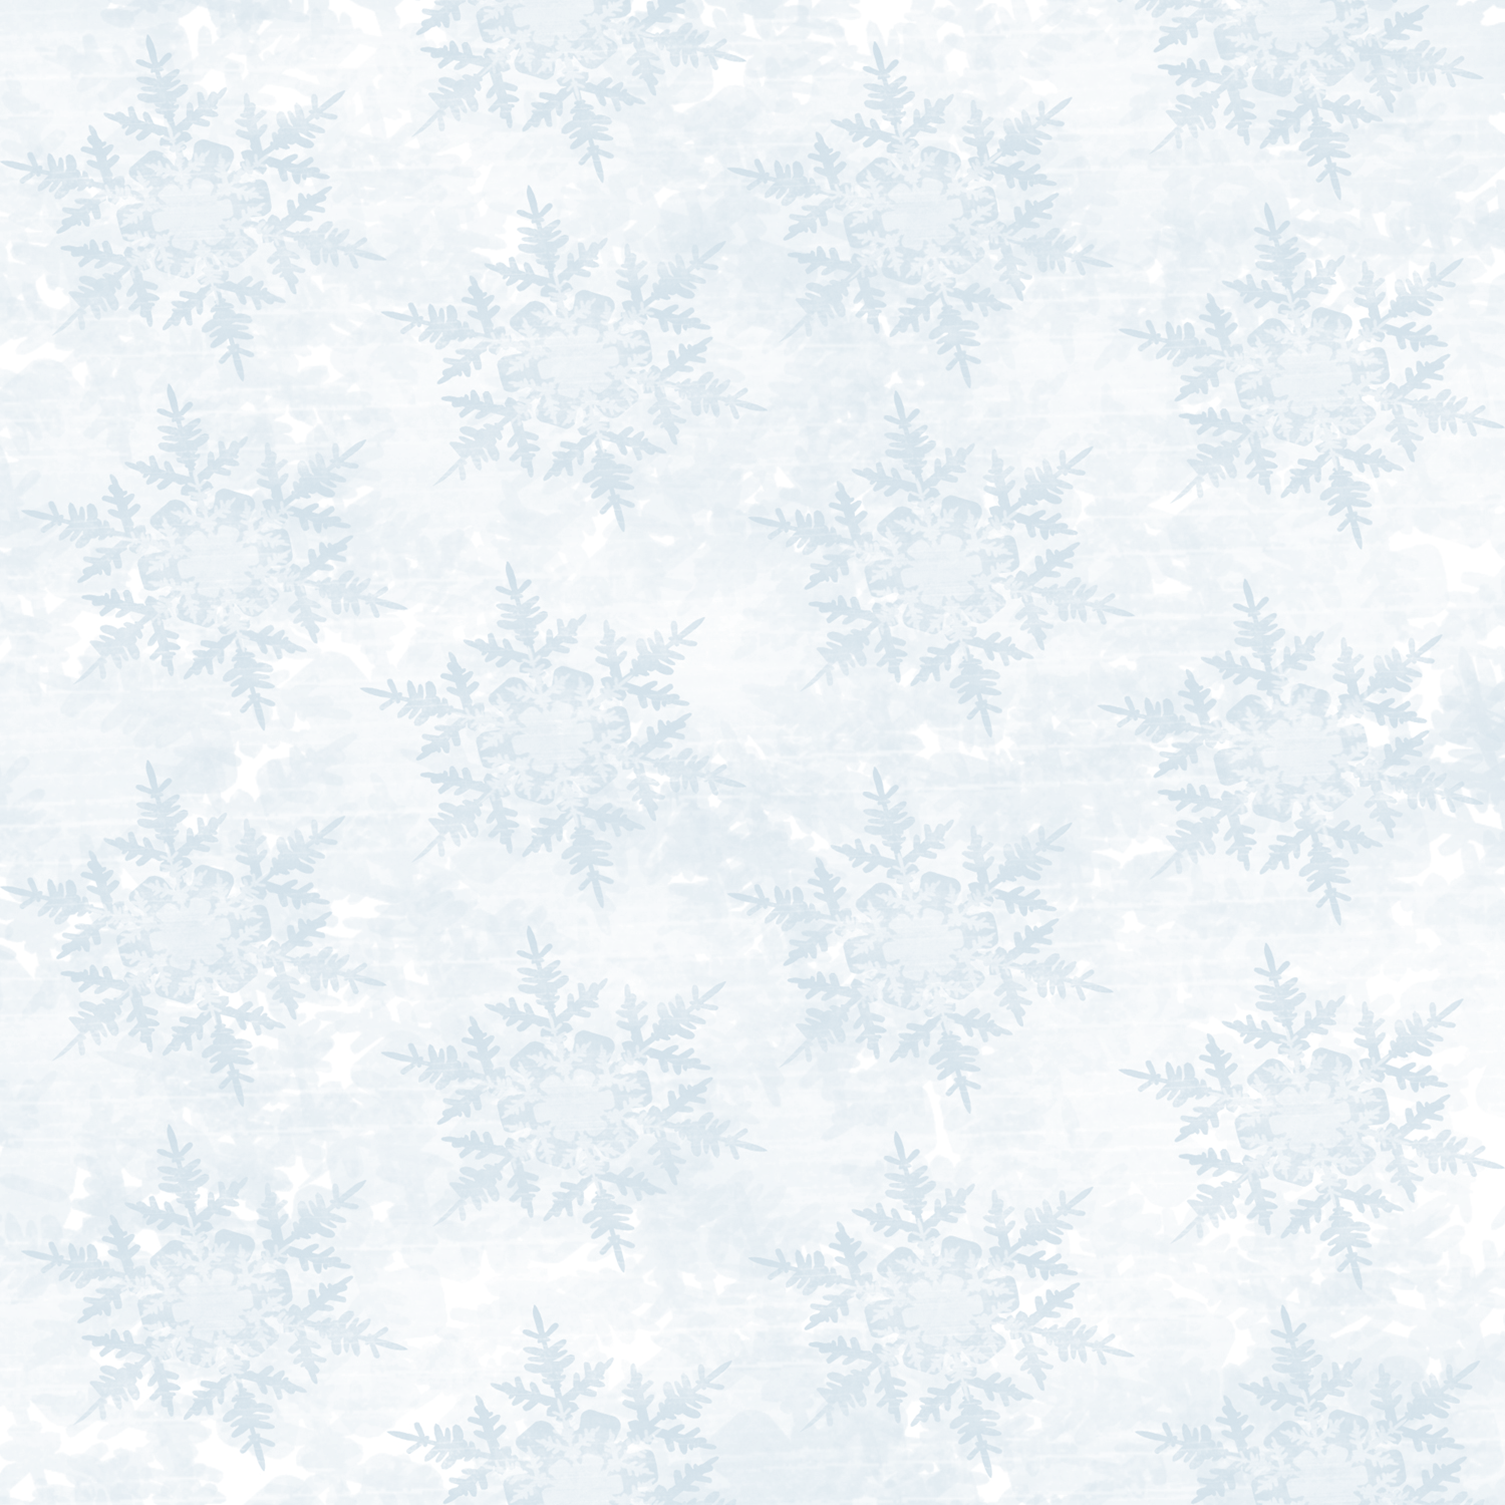 Snowflake Background Png Snowflake Background